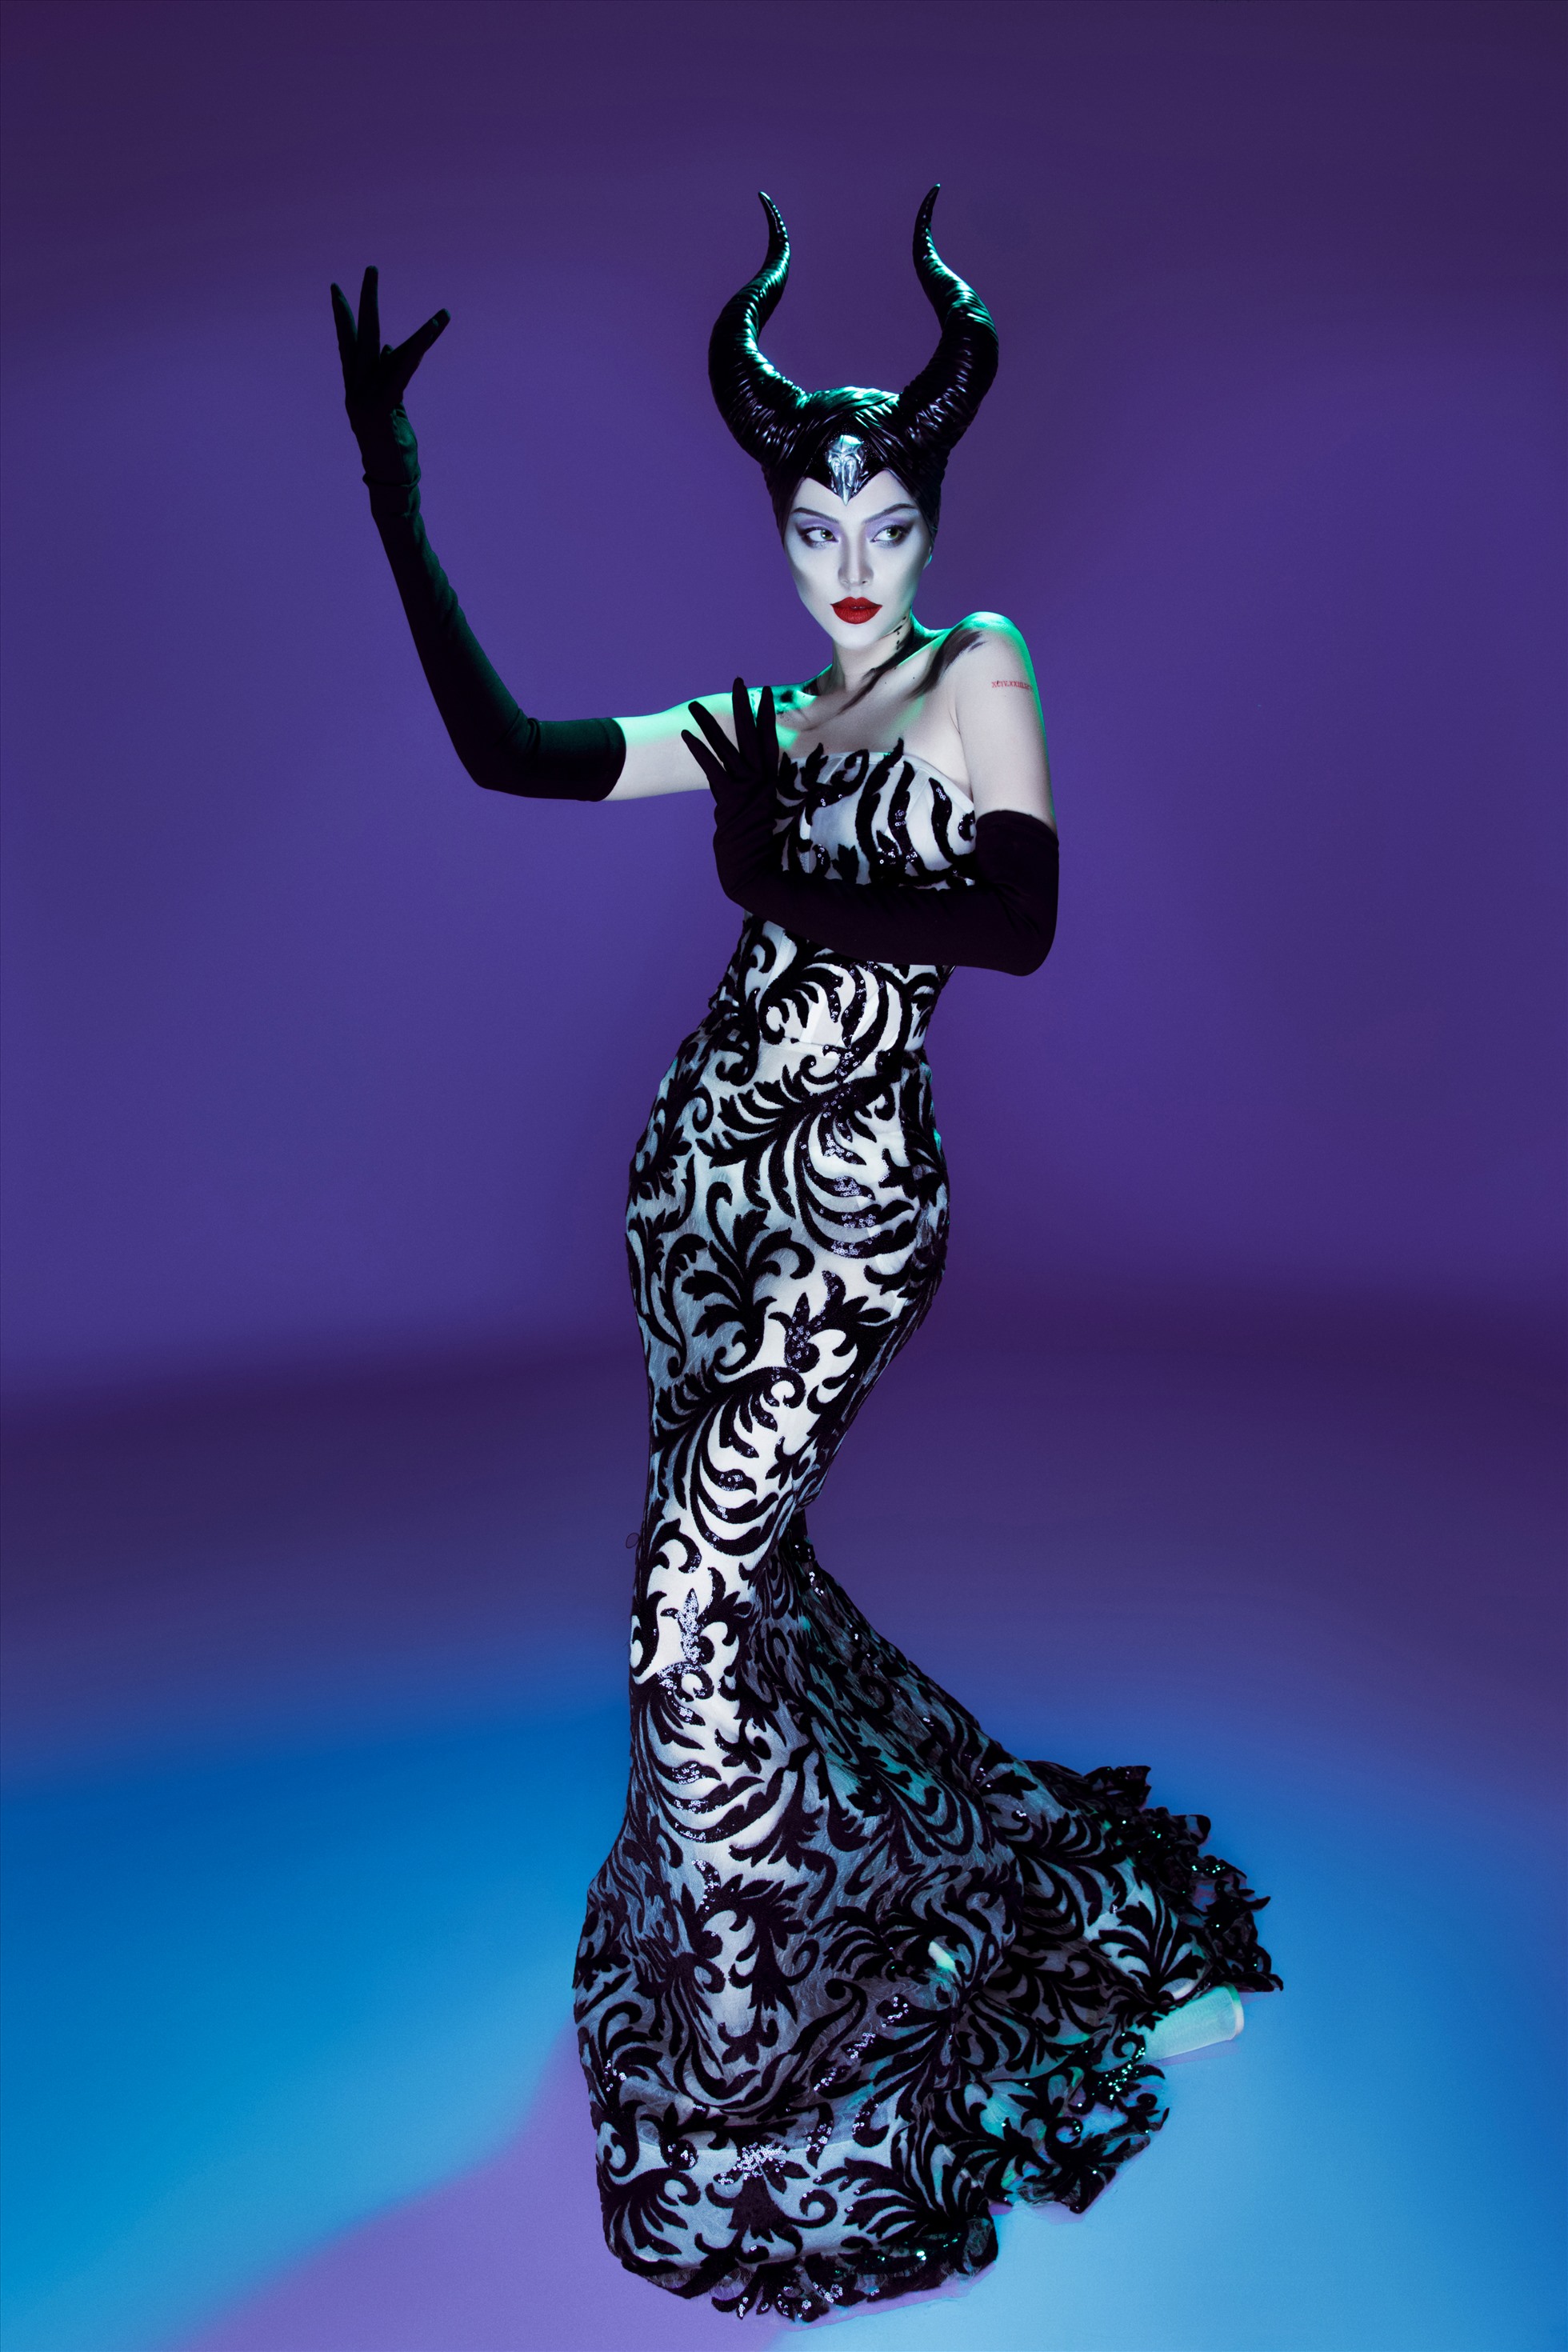 Nhân vật thứ 3 mà Tú Hảo “biến hình” cho dịp Halloween 2022 đó chính là Maleficent (Angelina Jolie thủ vai) - nhân vật chính trong bộ phim điện ảnh đình đám cùng tên.